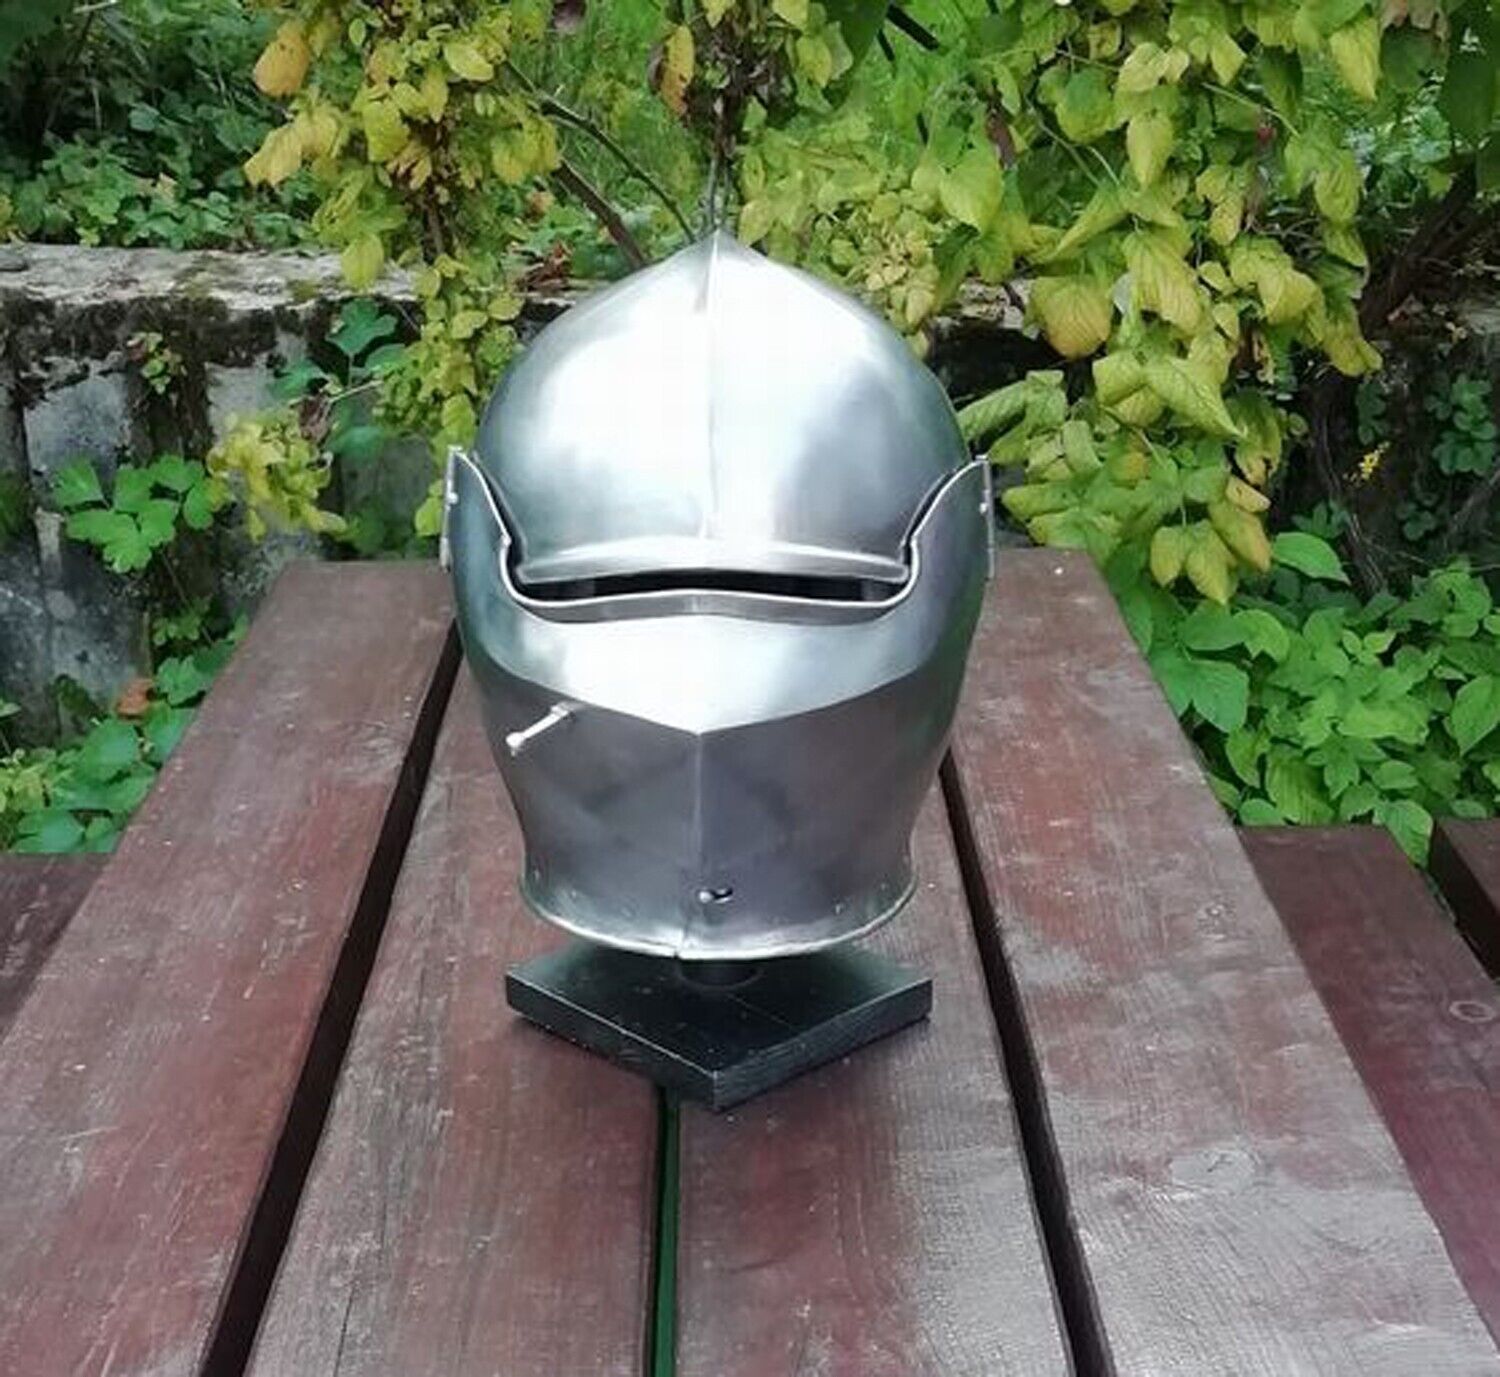 Medieval Armet Helmet Battle Bassinet 16 Gauge Ready Warrior Helmet Armour SCA